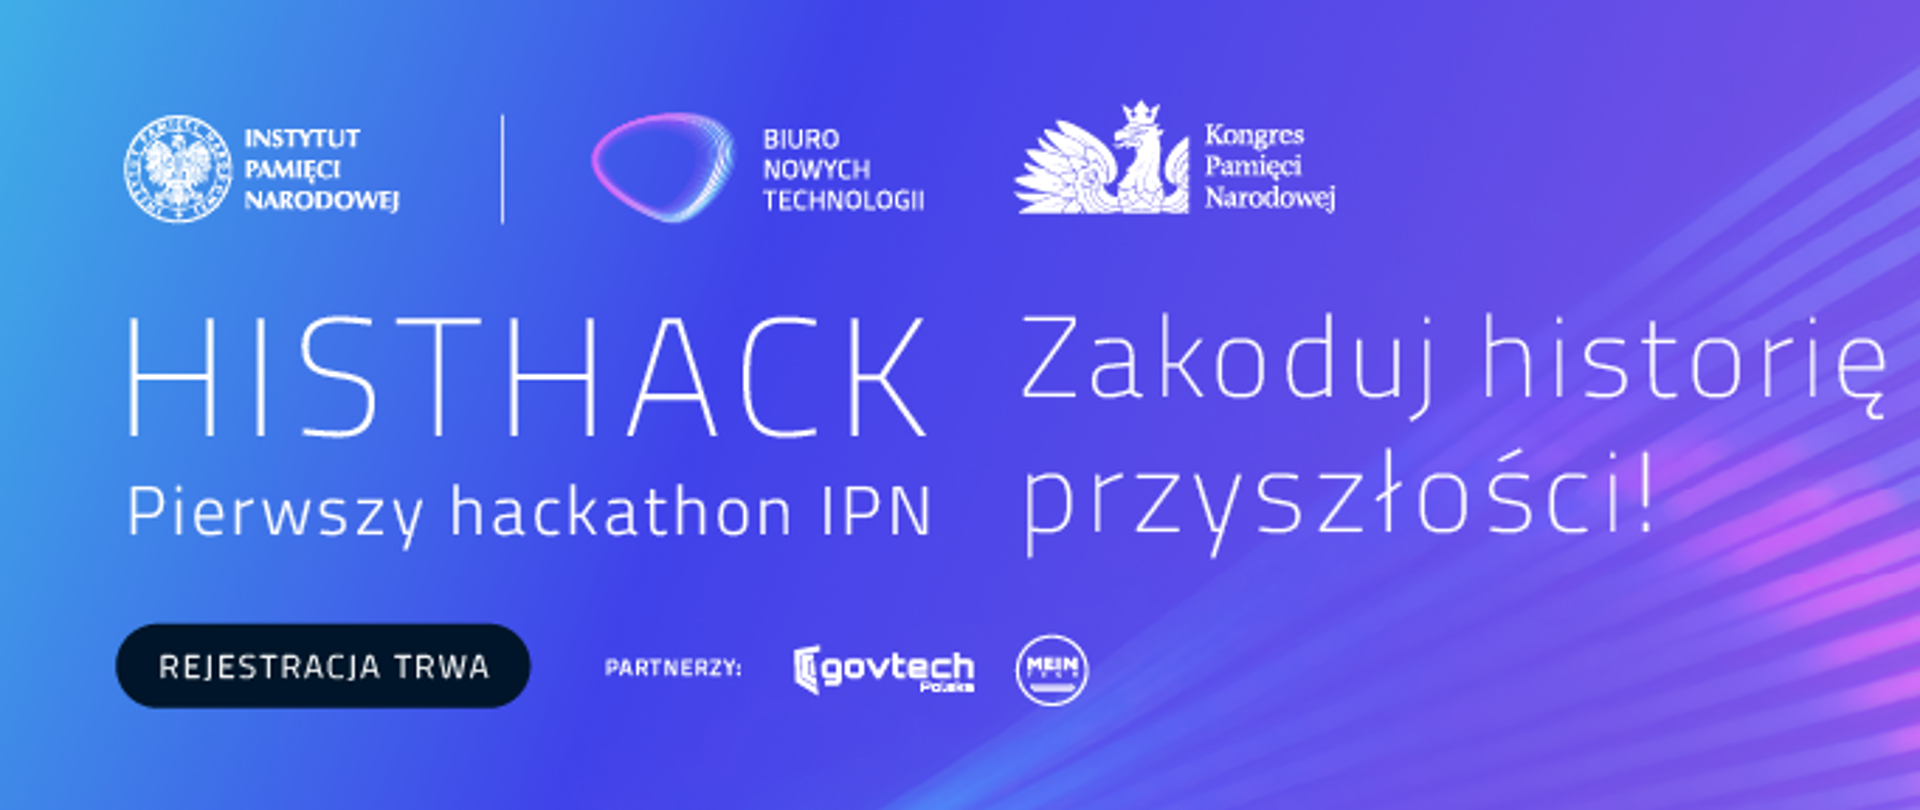 Histhack pierwszy hackathon IPN - zakoduj historię przyszłości!